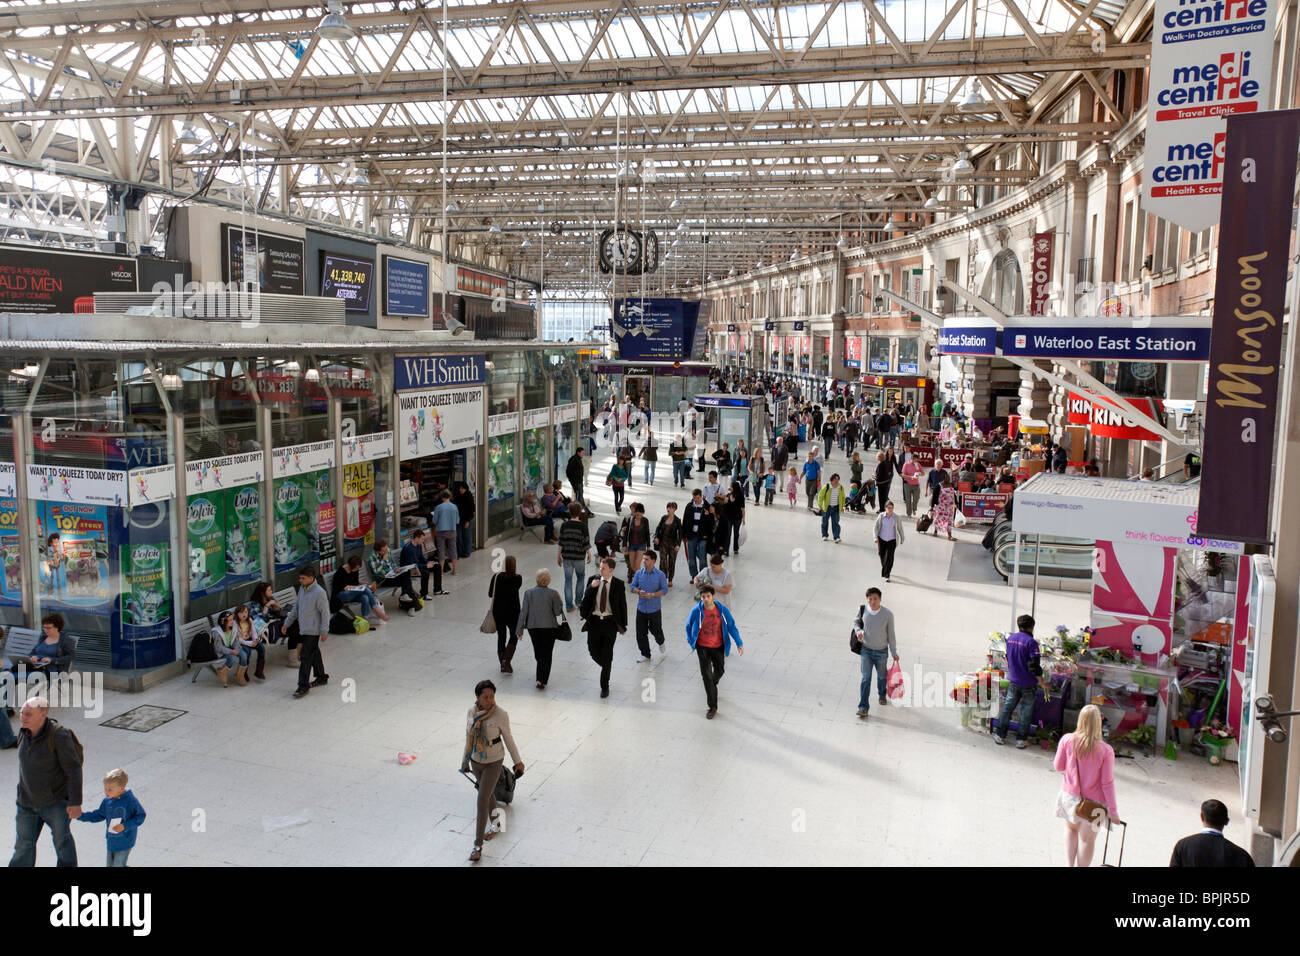 La stazione di Waterloo concourse - Londra Foto Stock